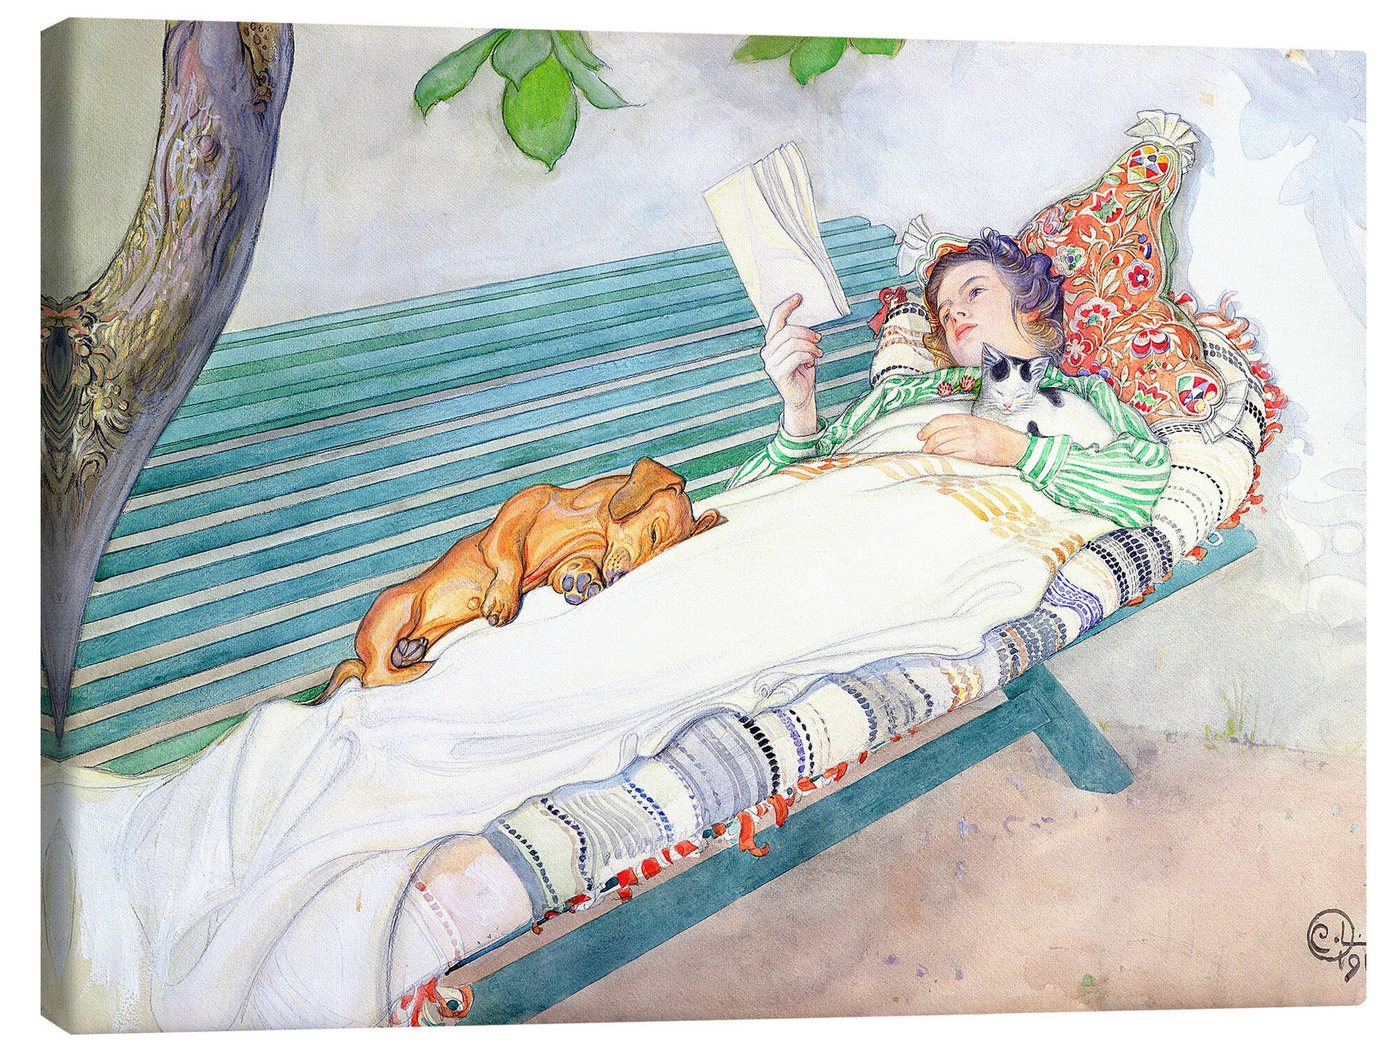 Posterlounge Leinwandbild Carl Larsson, Auf einer Bank liegende Frau, Badezimmer Landhausstil Malerei von Posterlounge